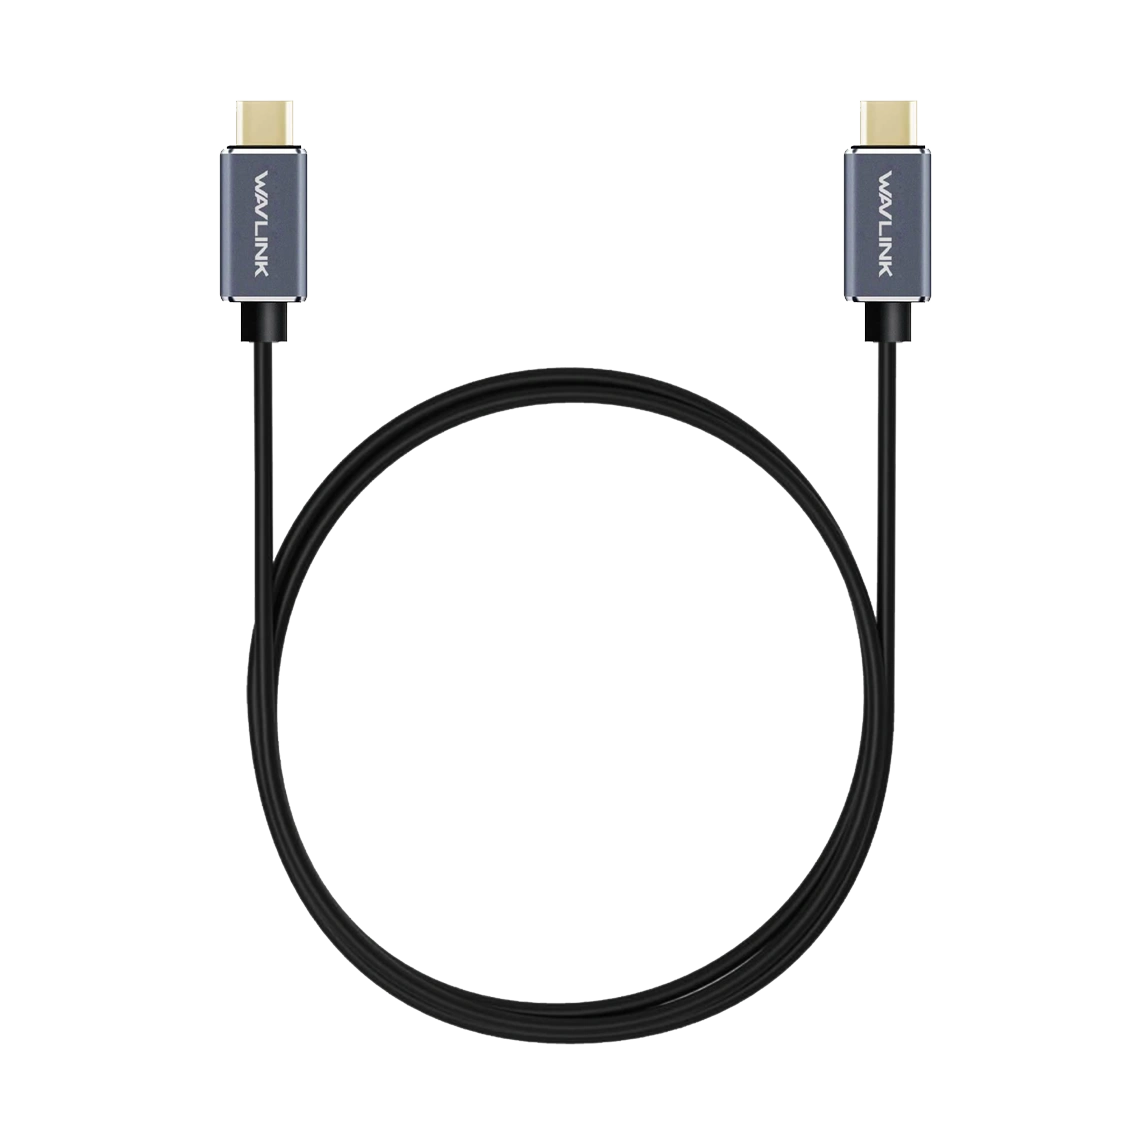 کابل شارژ USB-C ویولینک مدل CB05 یک متری